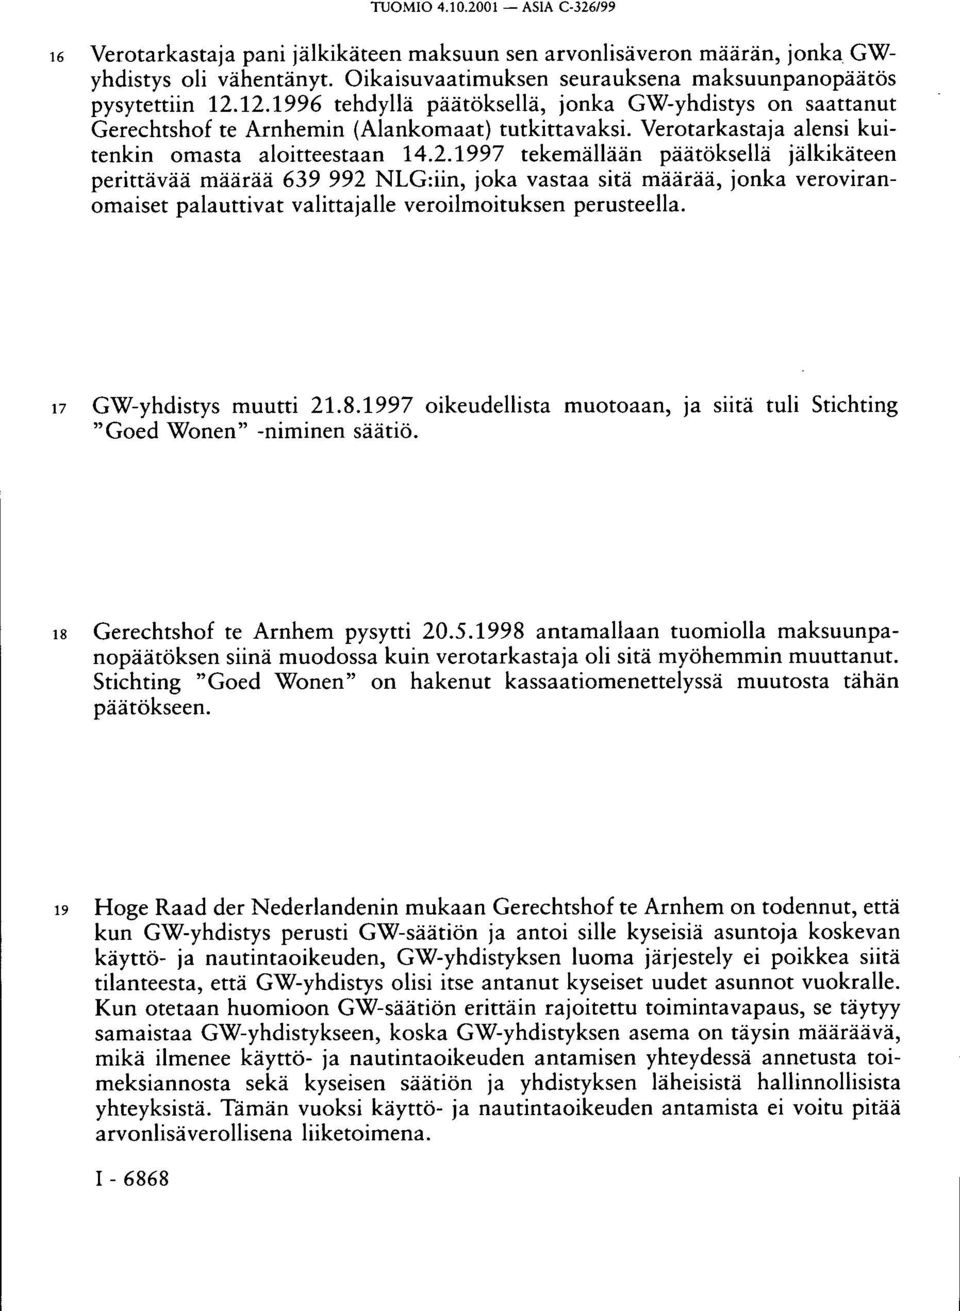 17 GW-yhdistys muutti 21.8.1997 oikeudellista muotoaan, ja siitä tuli Stichting "Goed Wonen" -niminen säätiö. 18 Gerechtshof te Arnhem pysytti 20.5.